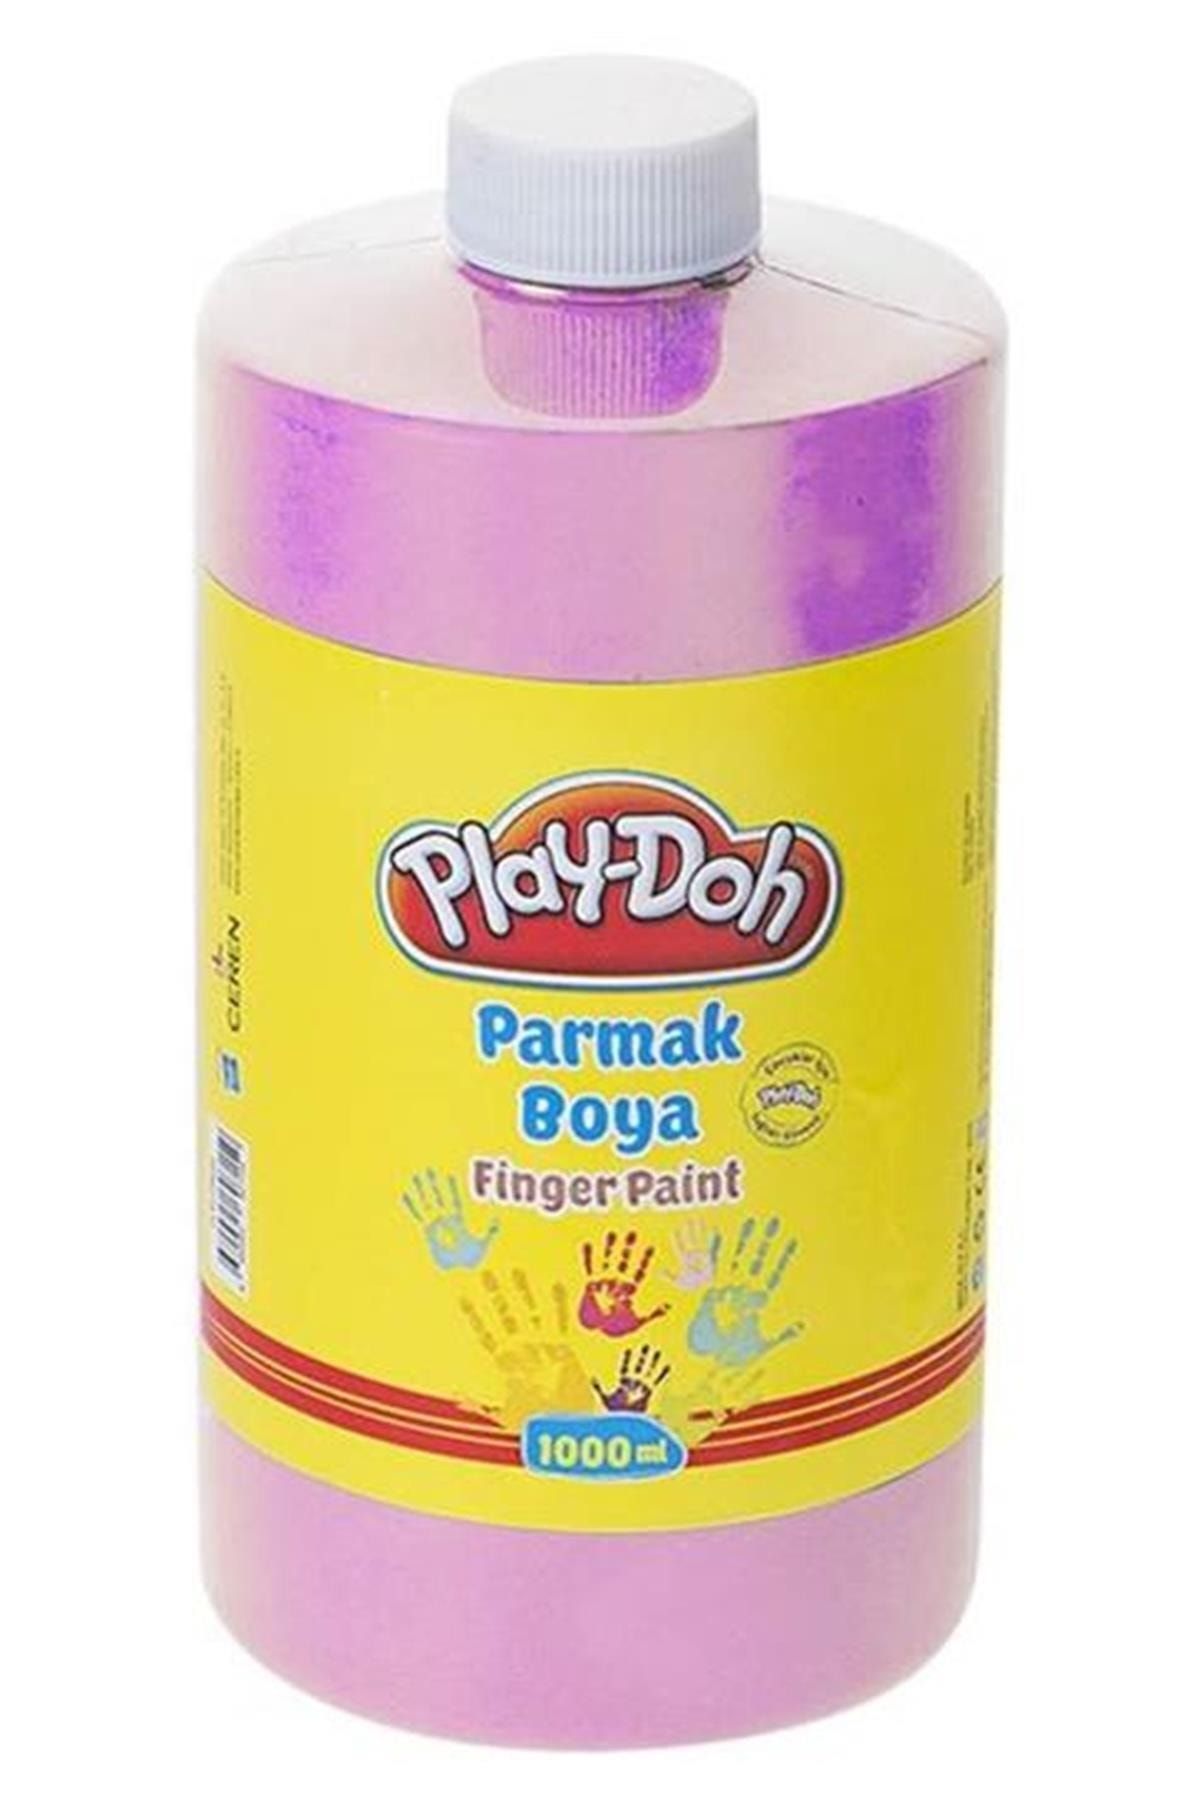 Play Doh Marka: Play-doh Parmak Boyası Pembe 1000 Ml Pr026 Kategori: Akrilik Boya